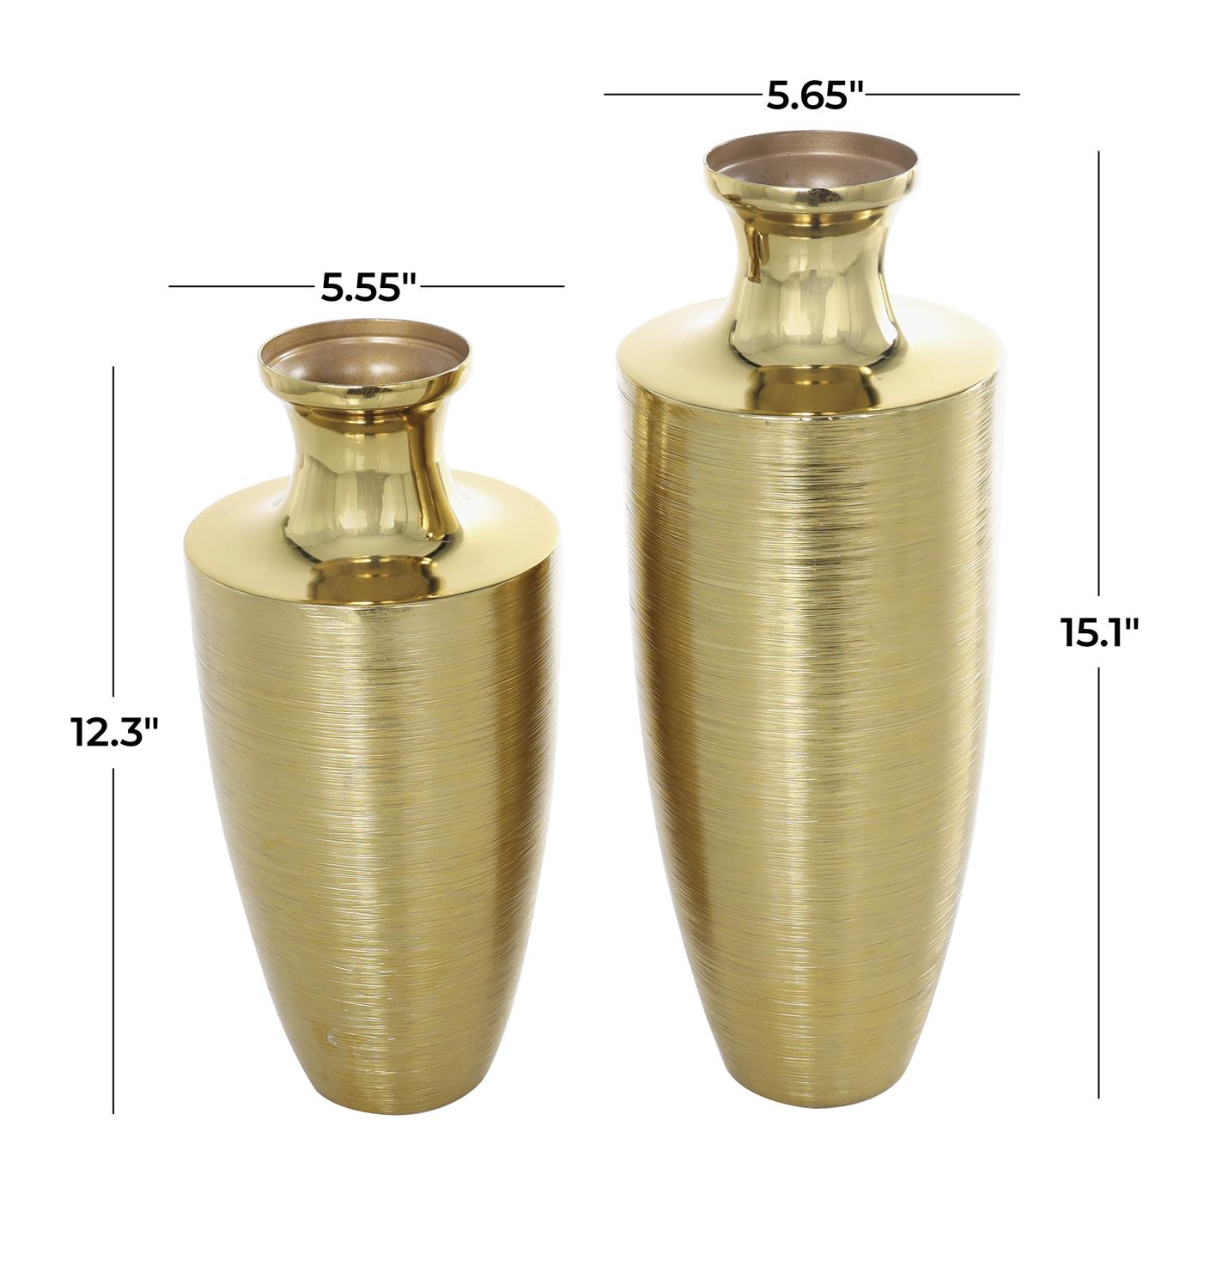 Gold Aluminum Brushed Vase (Various Sizes)